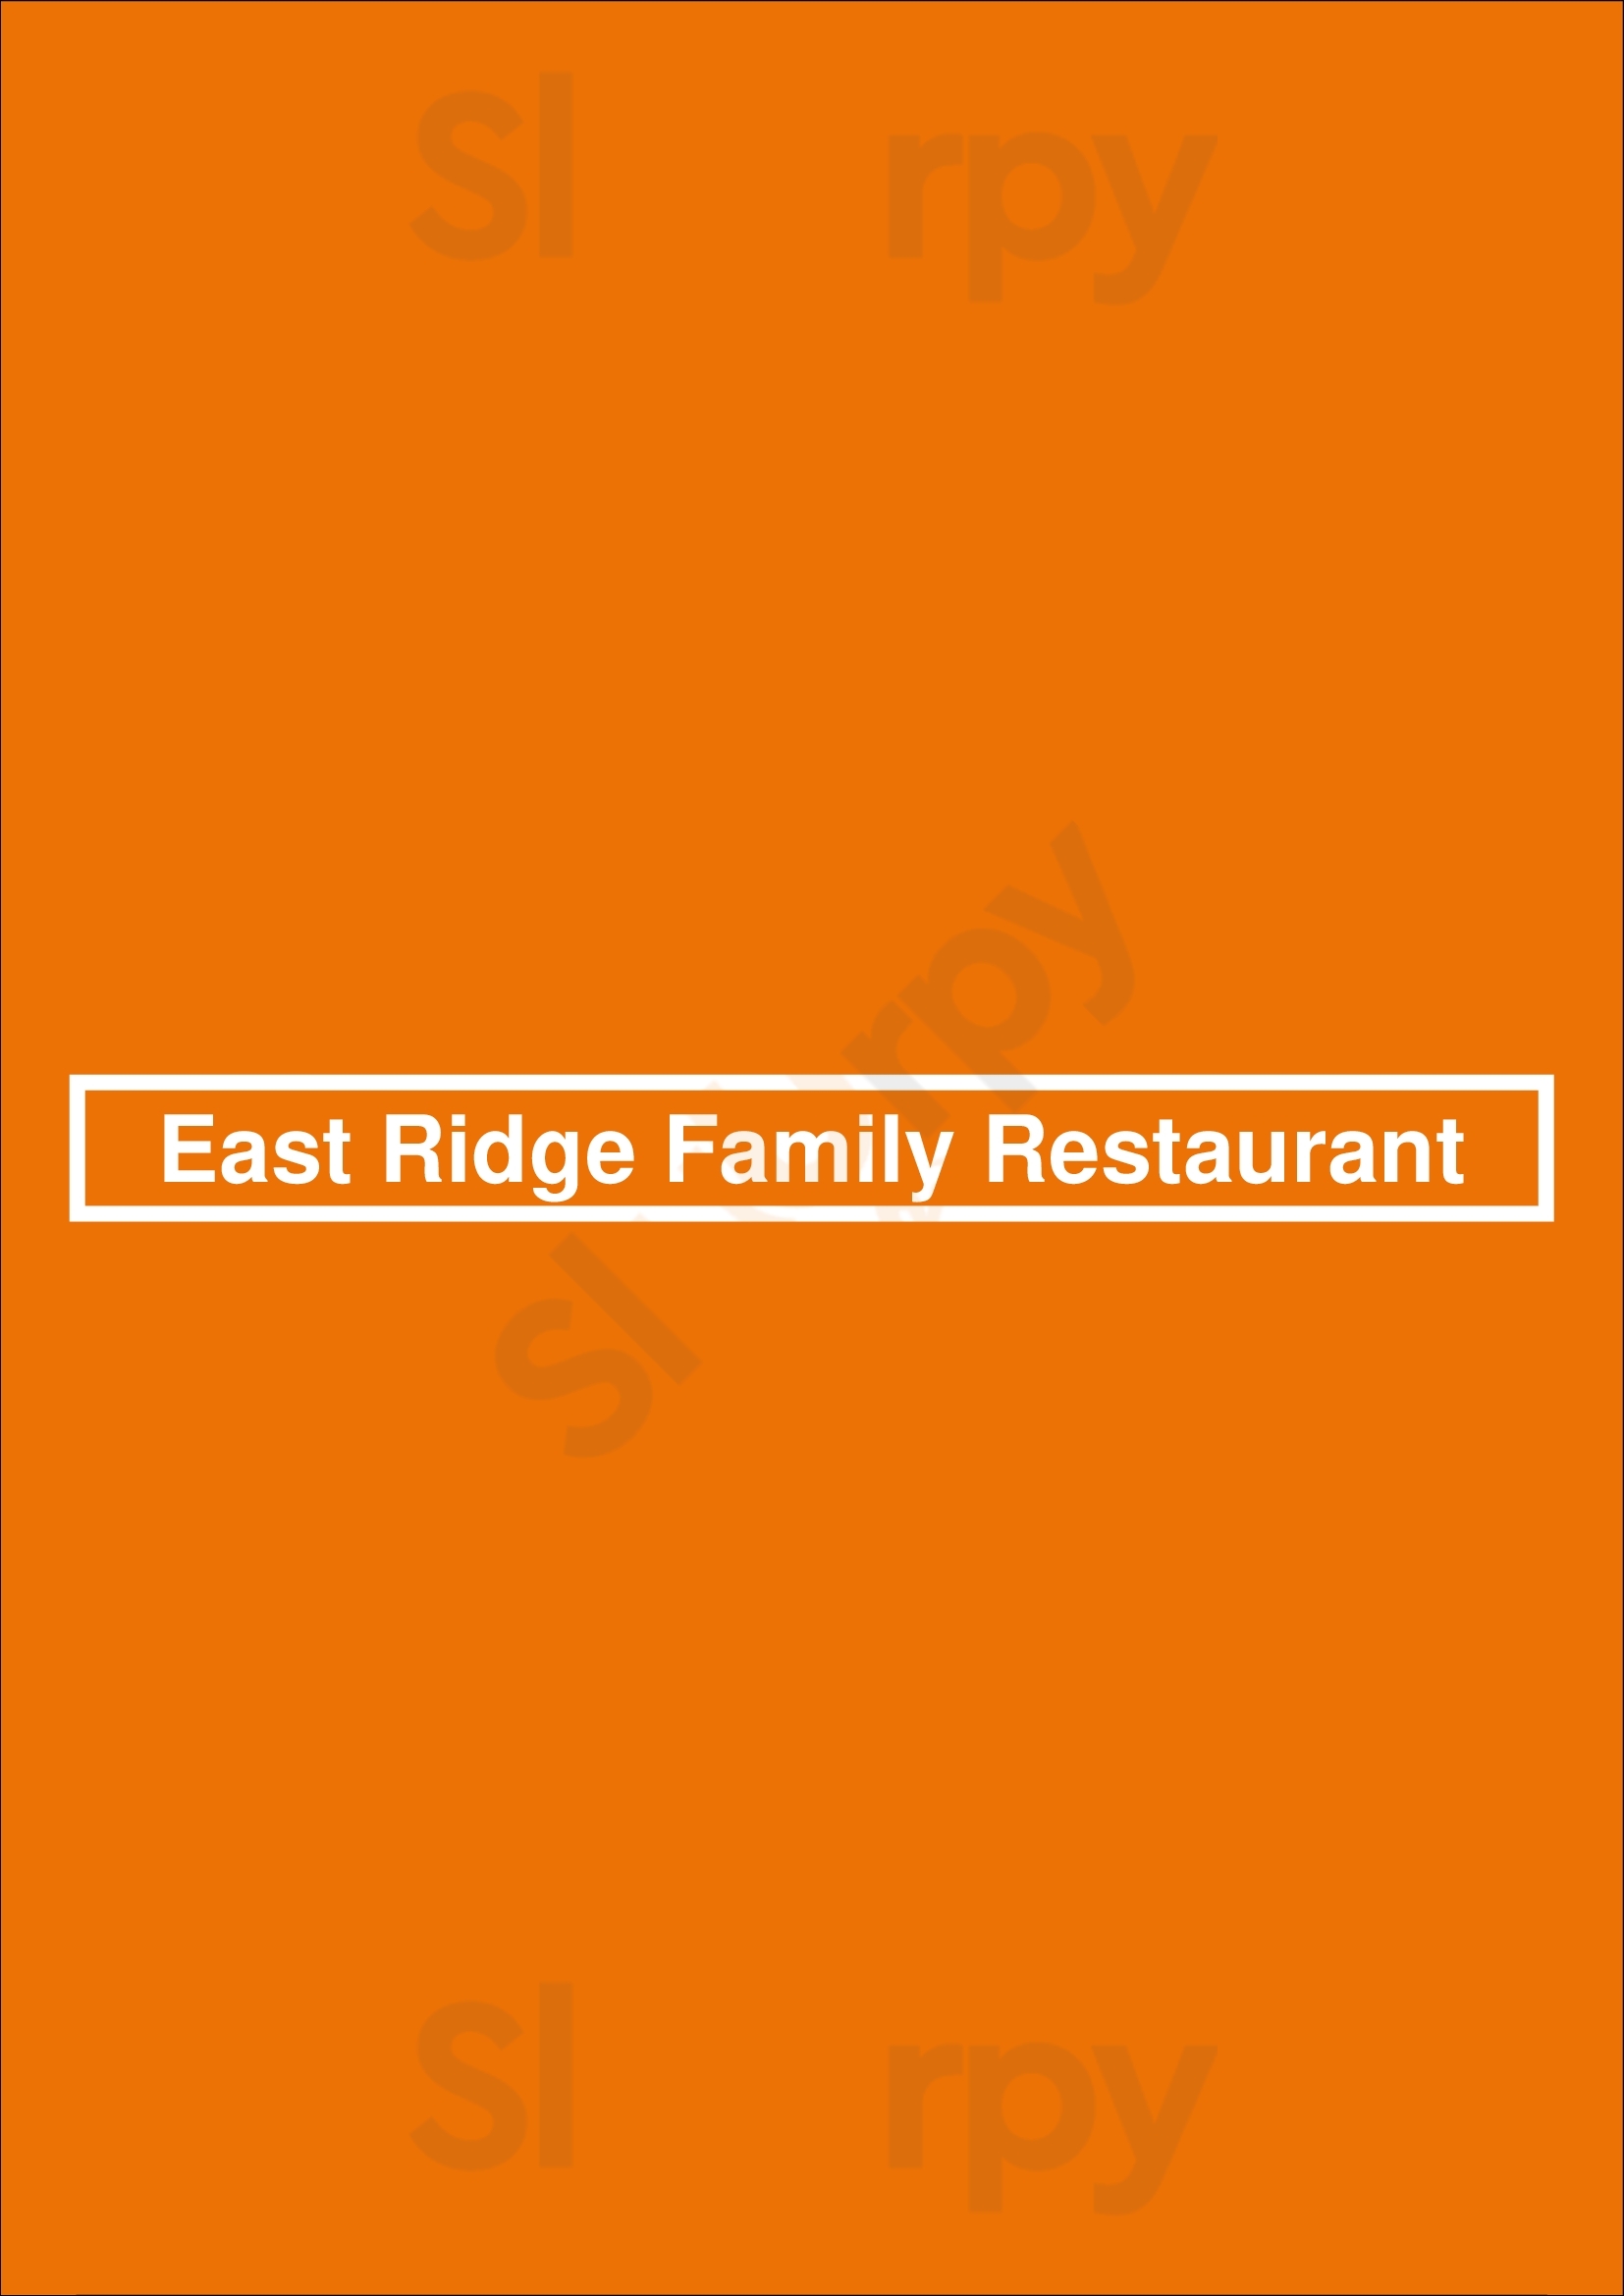 East Ridge Family Restaurant Rochester Menu - 1